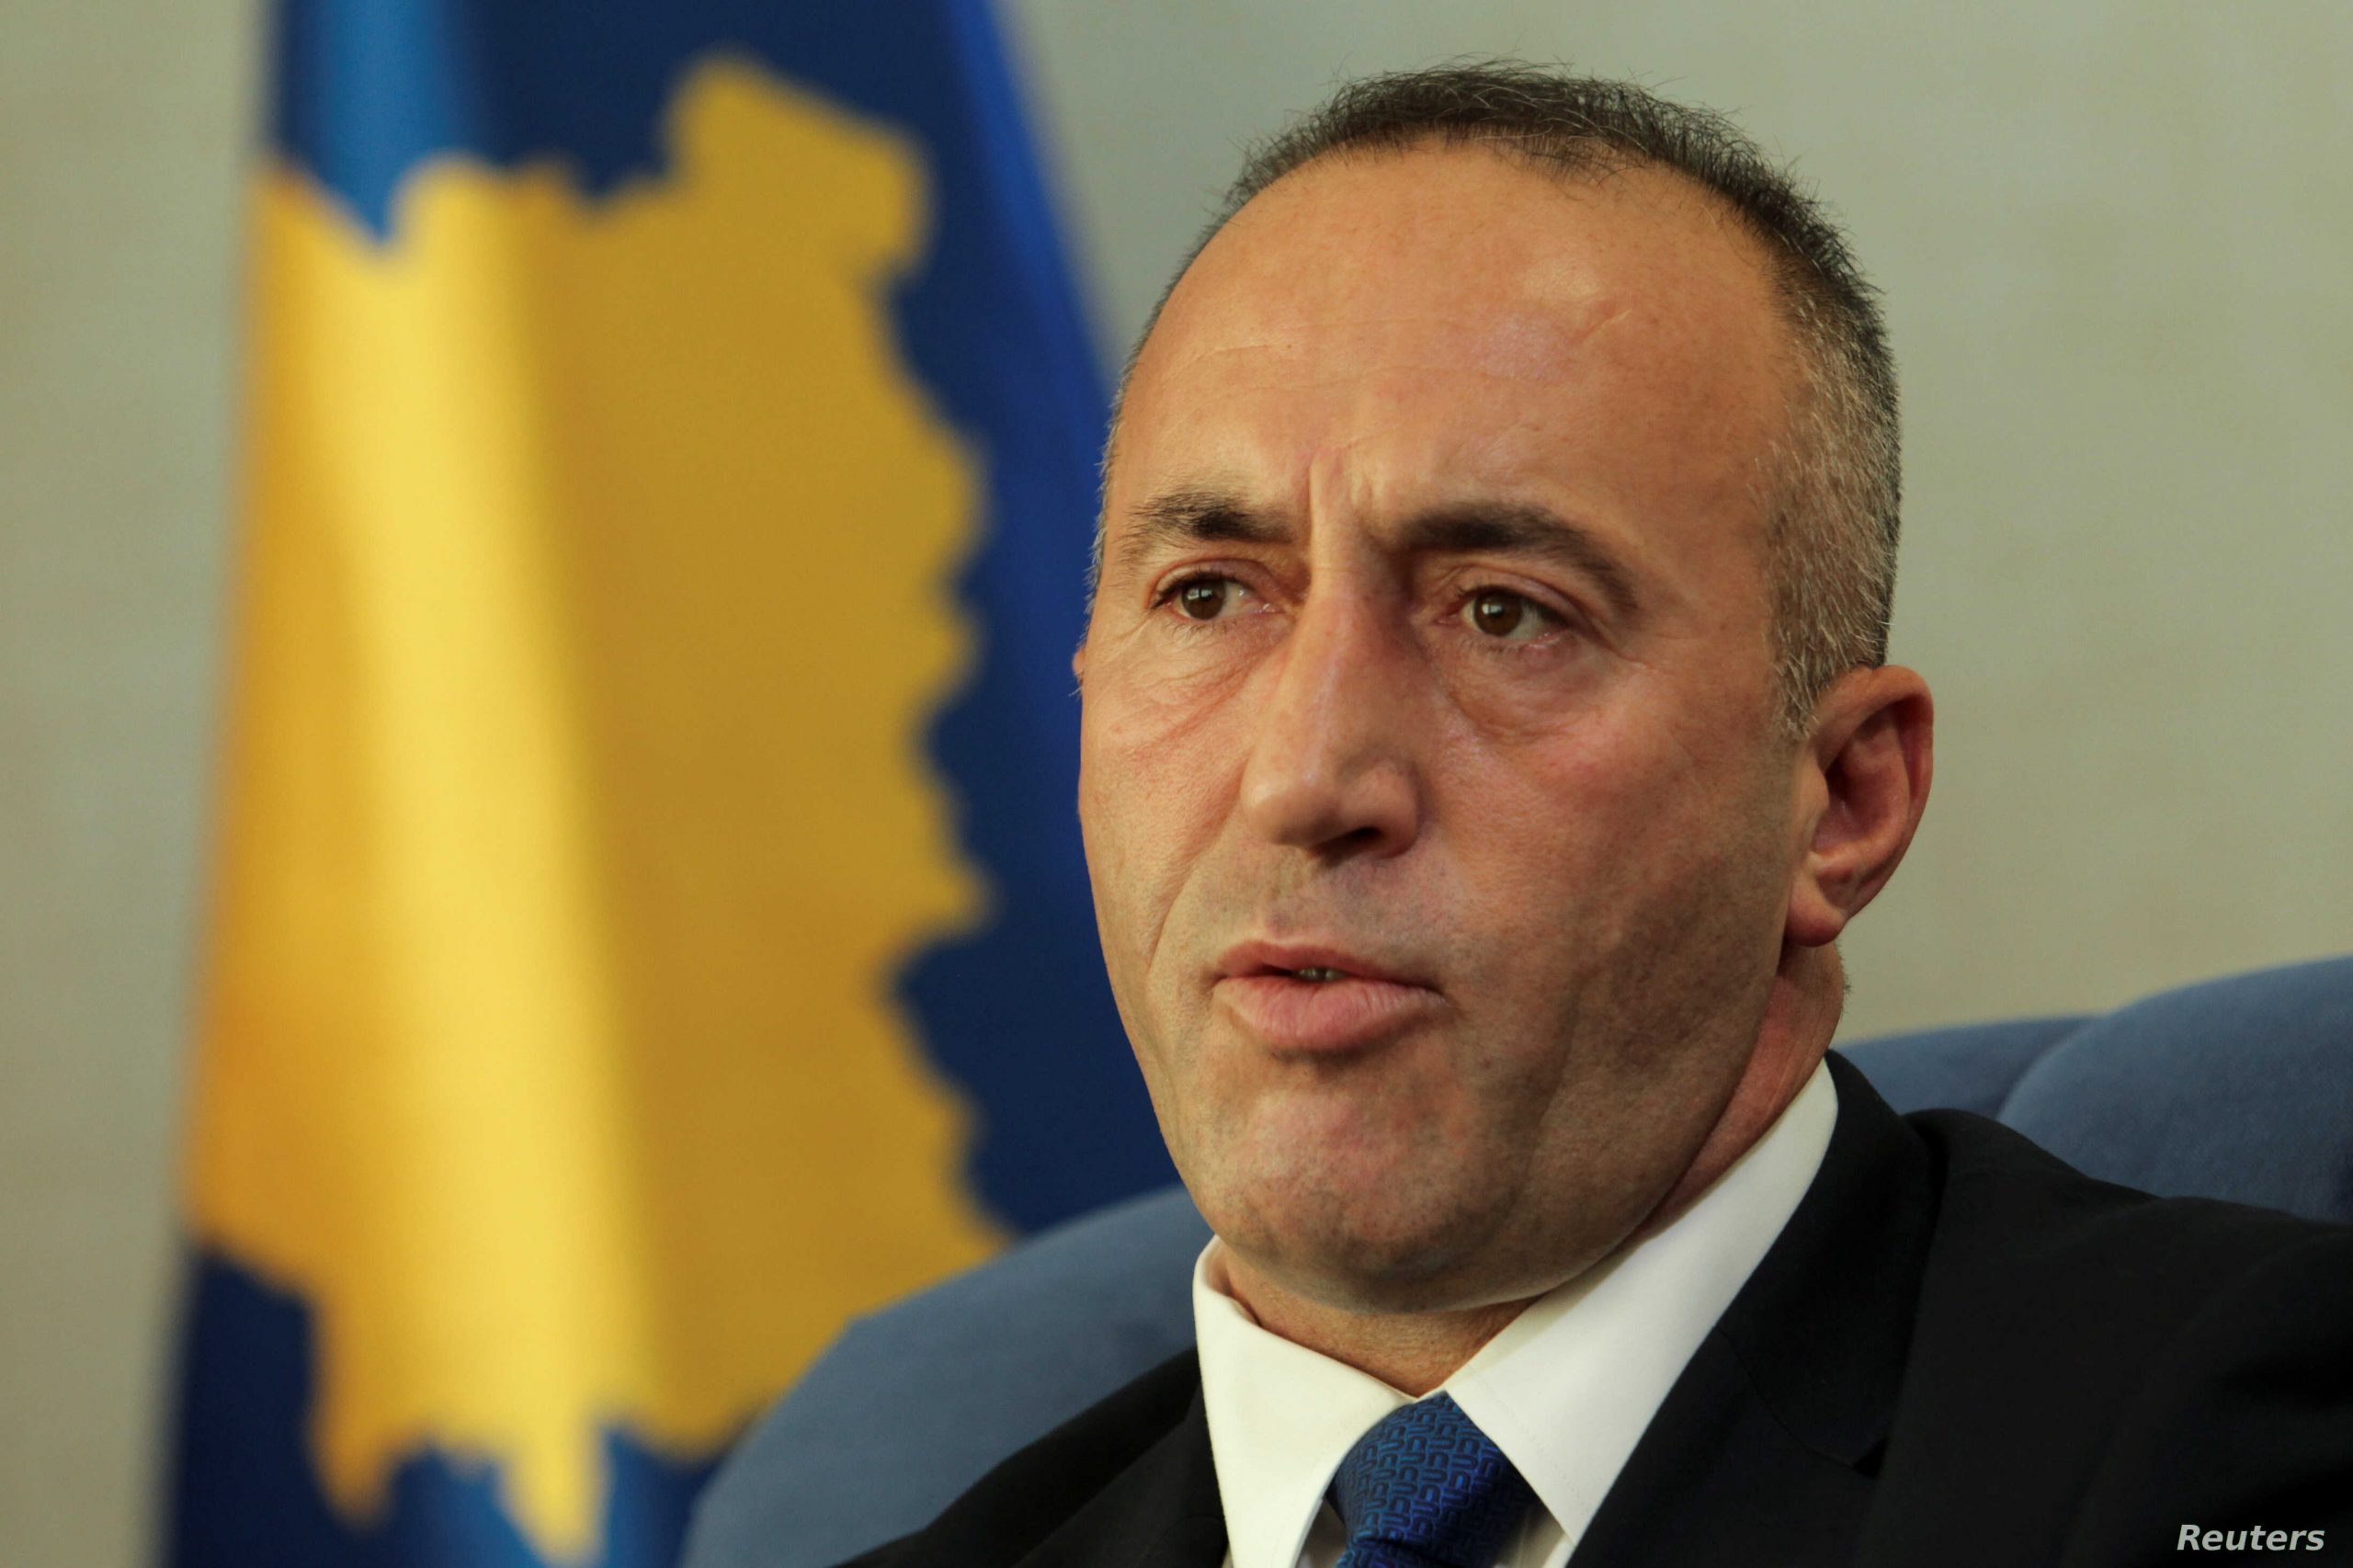 Tragjedia në Malin e Zi, Haradinaj: Shpreh ngushëllimet më të sinqerta për shtetin fqinj dhe mik